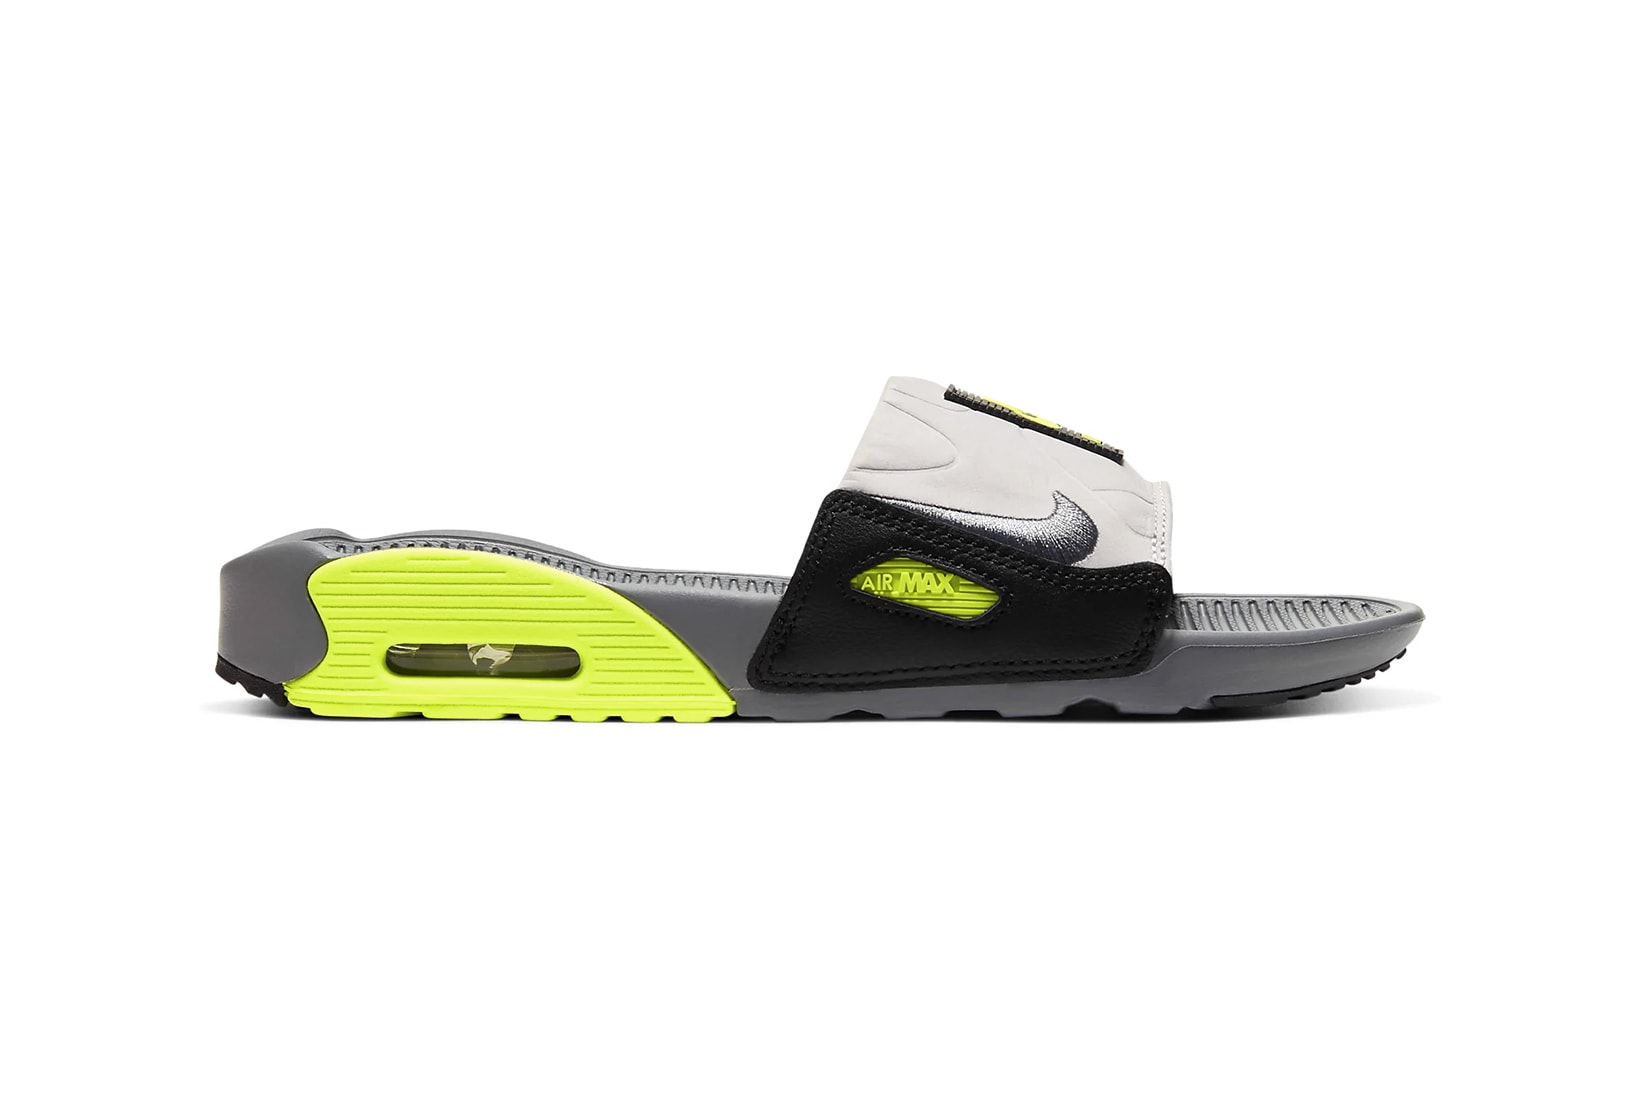 nike air max 90 slide sandal neon green black white grey shoes footwear sneakerhead